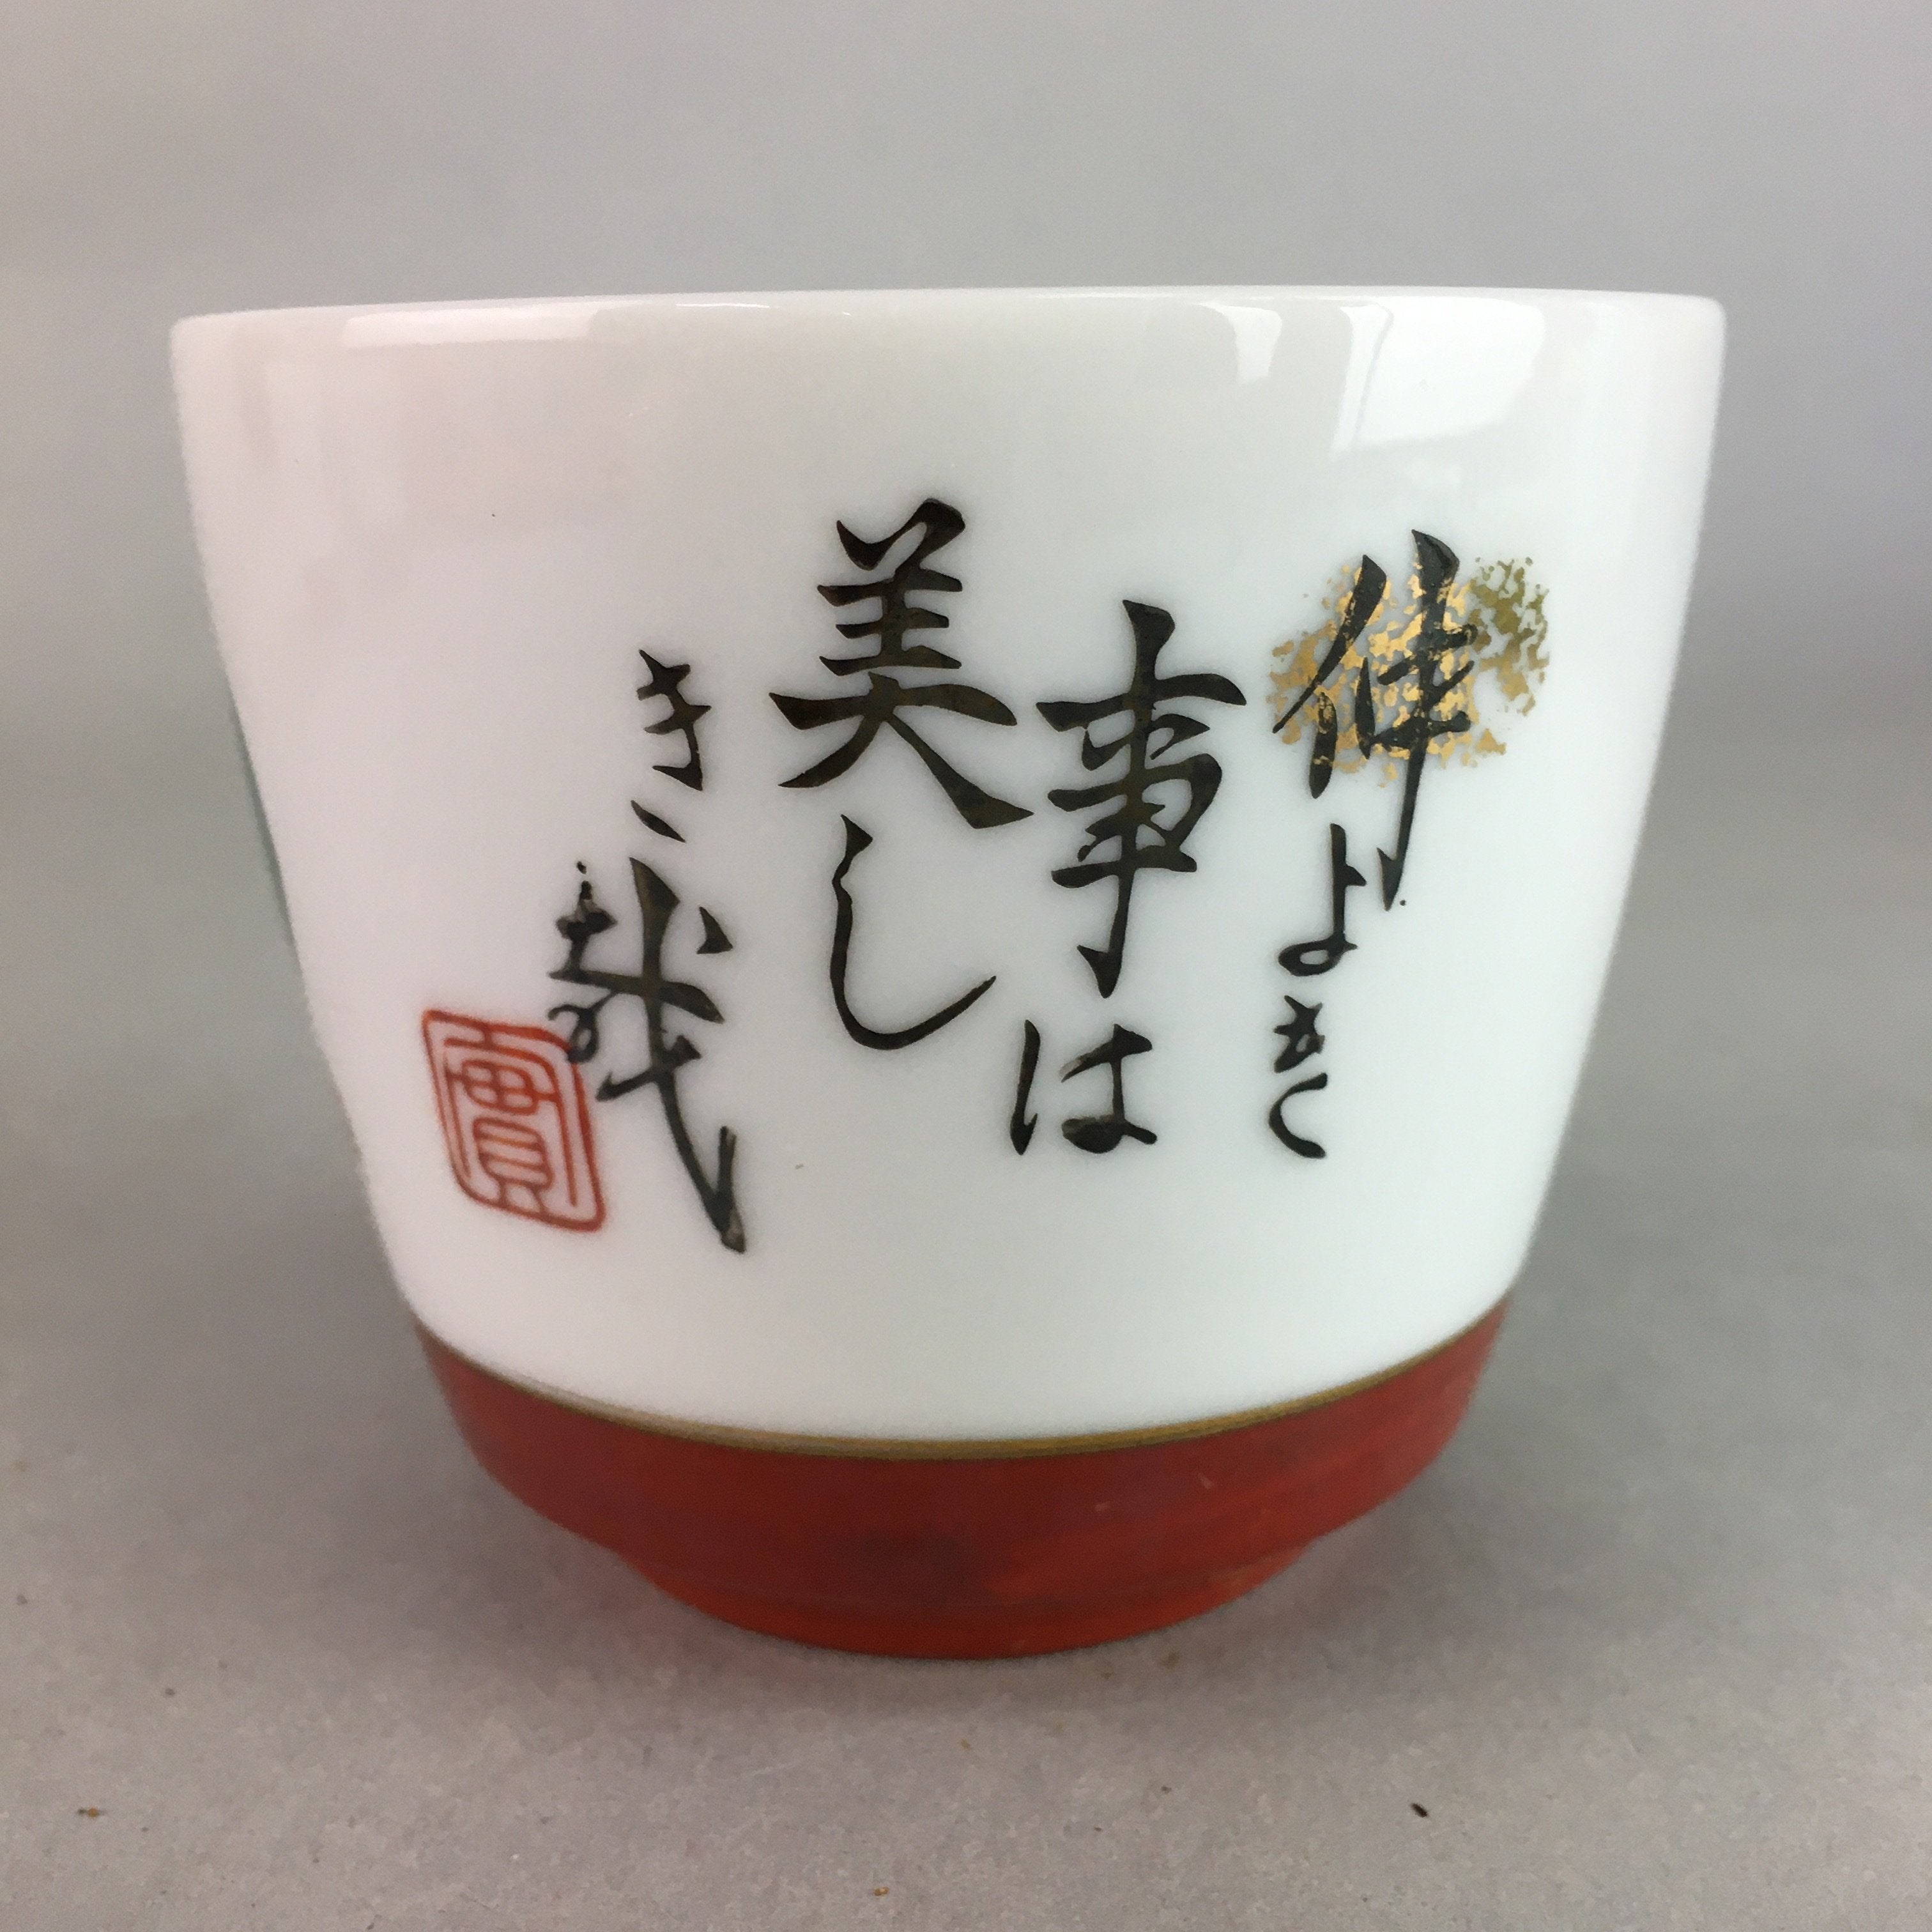 Japanese Porcelain Noodle Bowl Cup Vtg Soba Choko Word Kanji Vegetable PP289